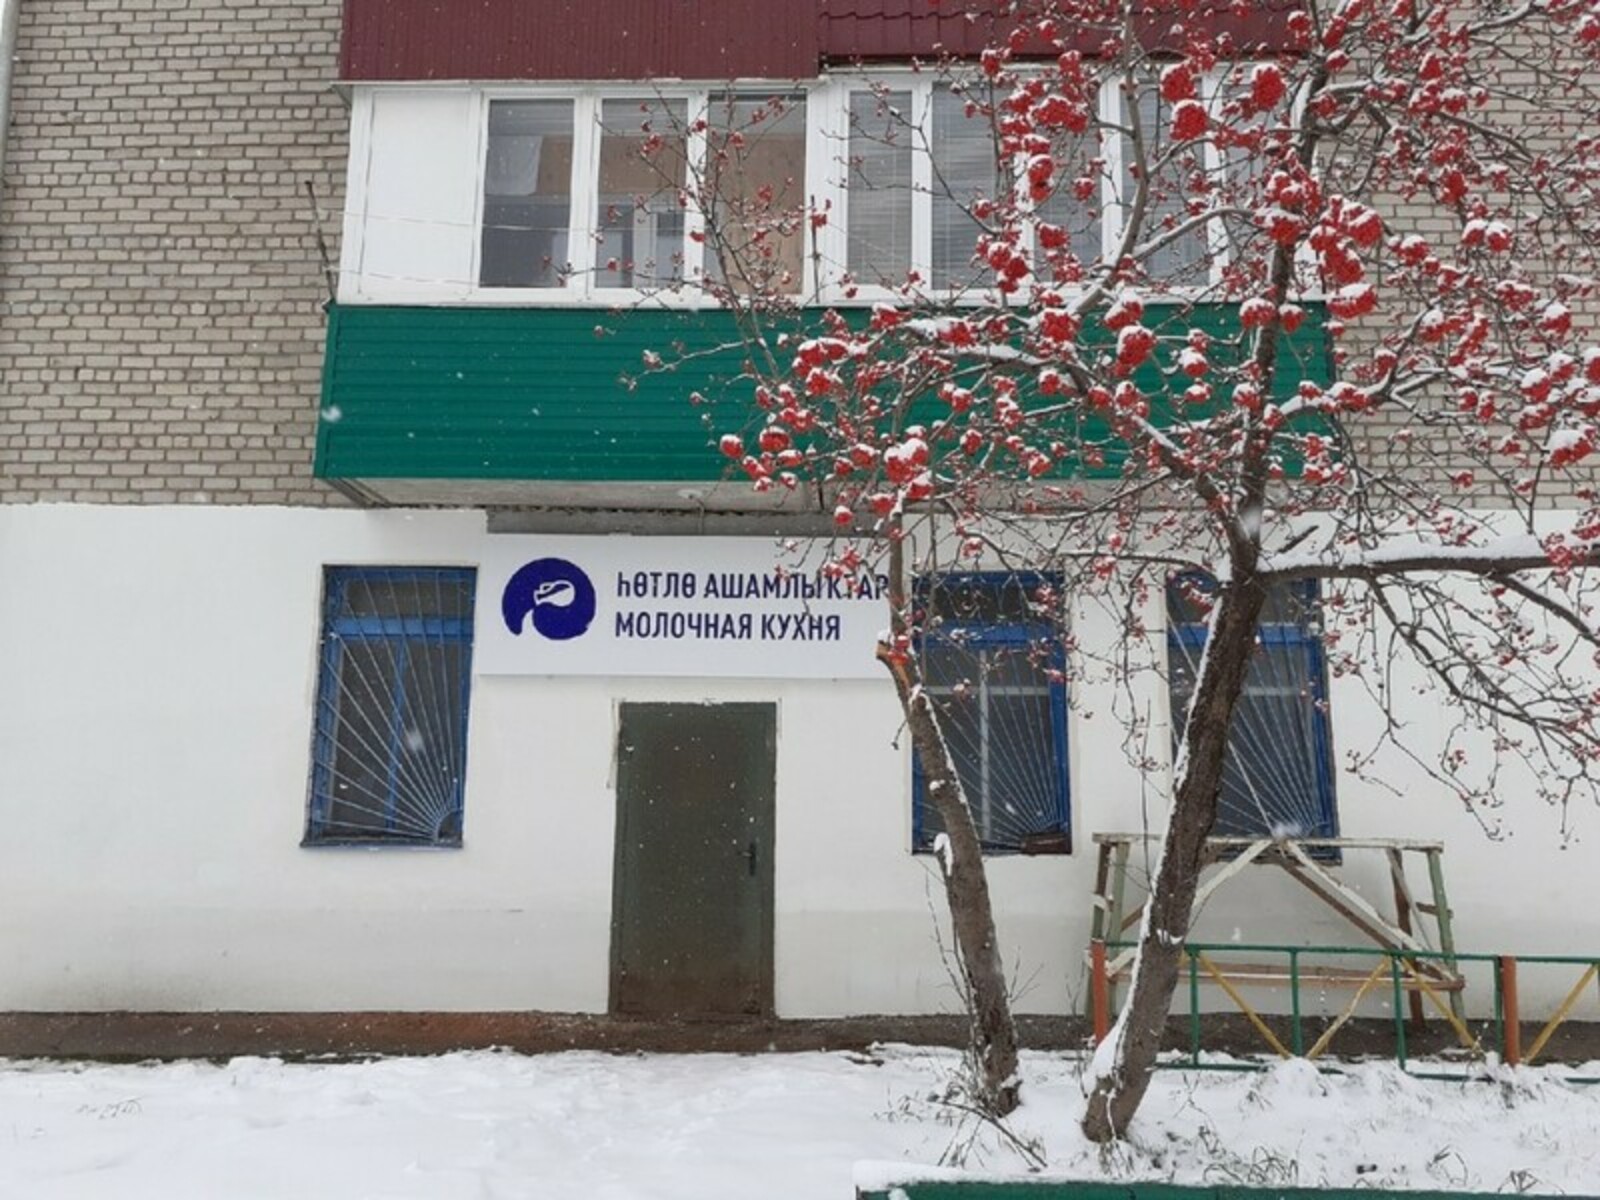 В Башкортостане сократили количество документов, необходимых для получения продукции молочной кухни